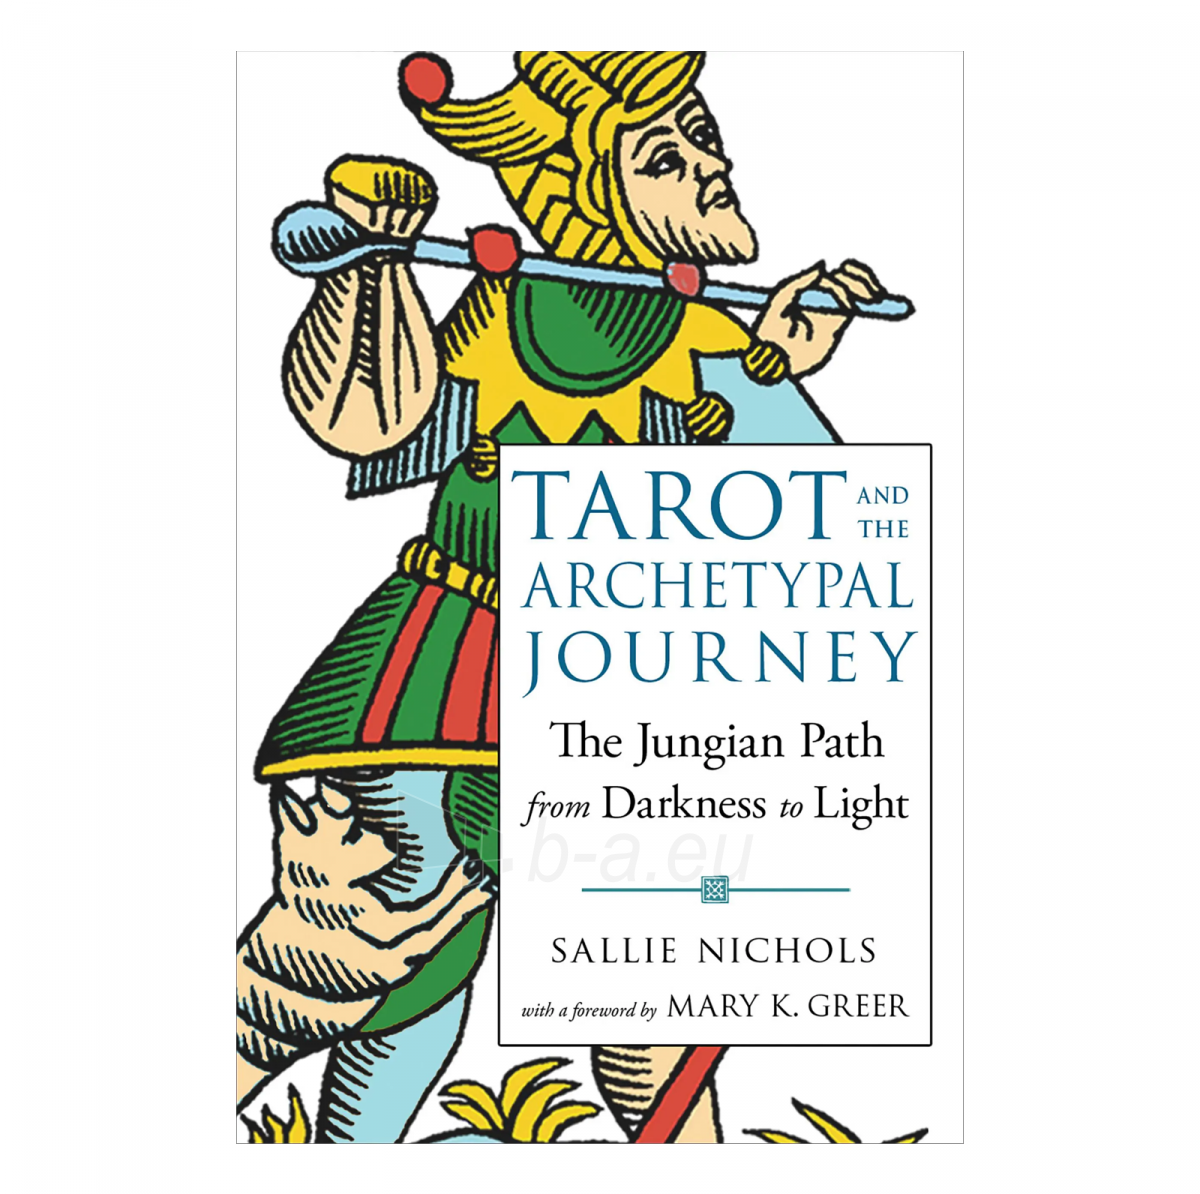 Taro kortos and the Archetypal Journey knyga Weiser Books paveikslėlis 2 iš 6